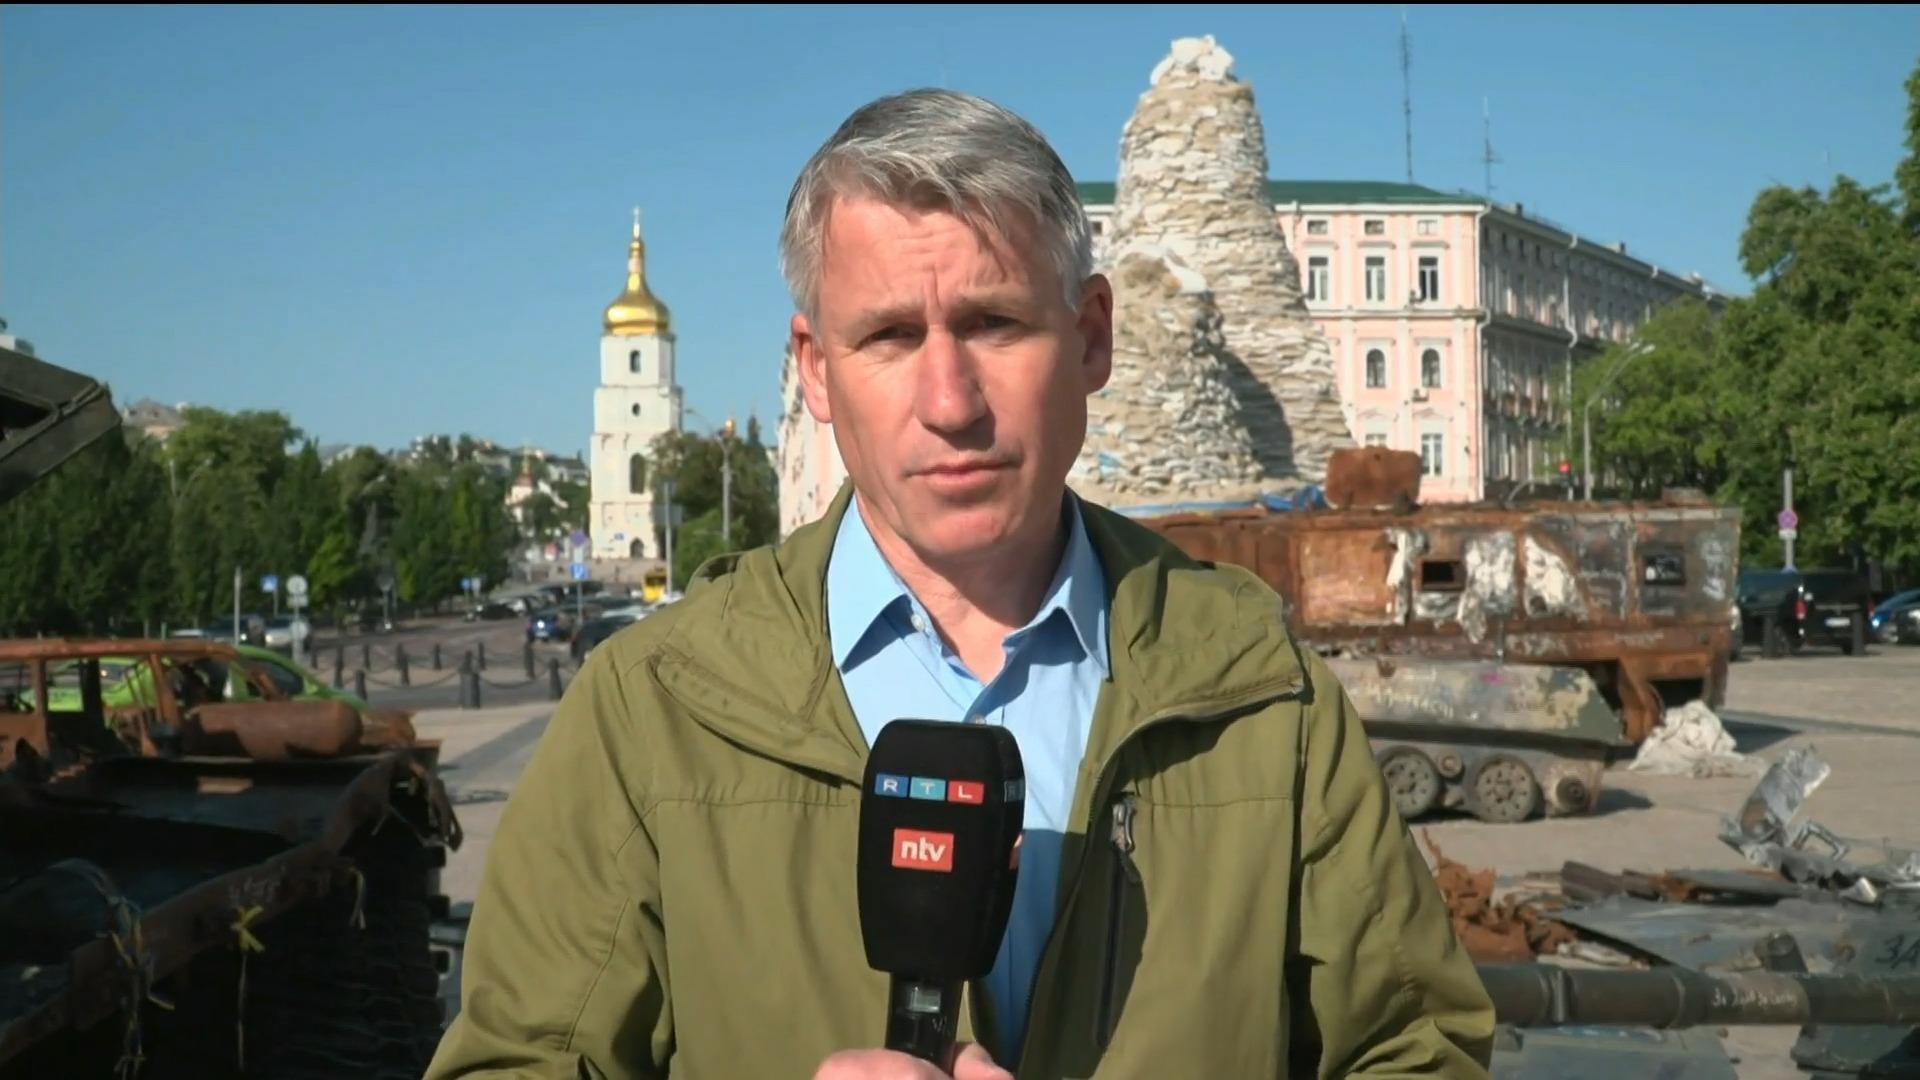 "Meldungen sind schon schlimm: 3 Tote, darunter 2 Kinder" Jürgen Weichert über Angriffe auf Kiew